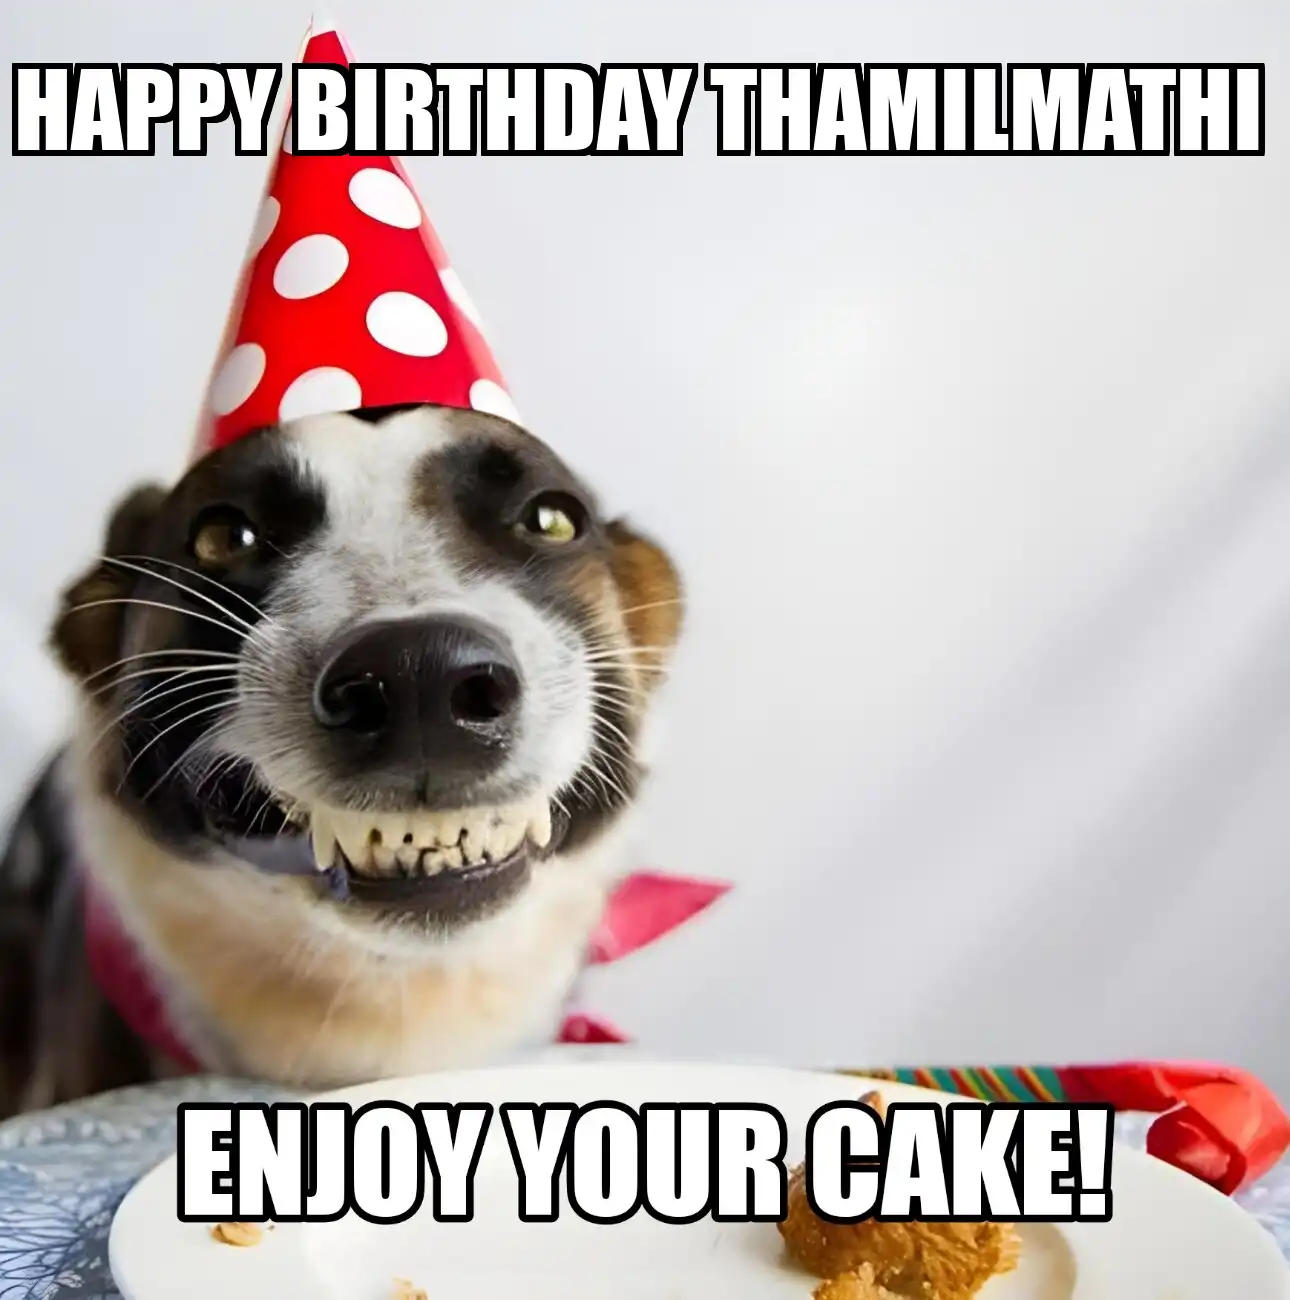 Happy Birthday Thamilmathi Enjoy Your Cake Dog Meme